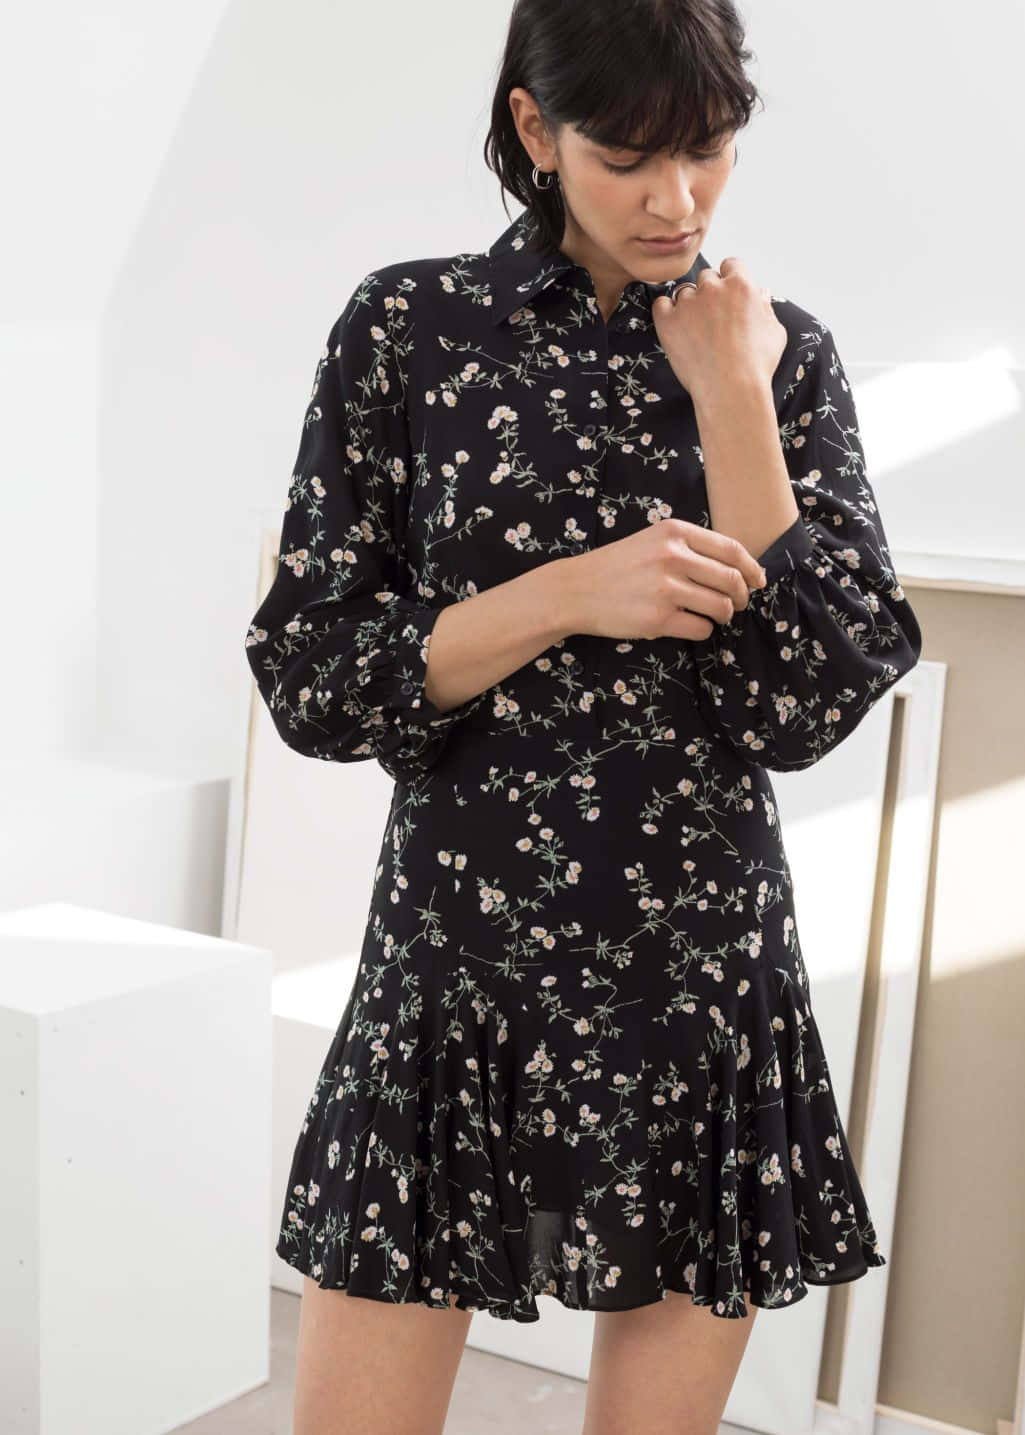 A Woman Wearing A Black Floral Print Dress